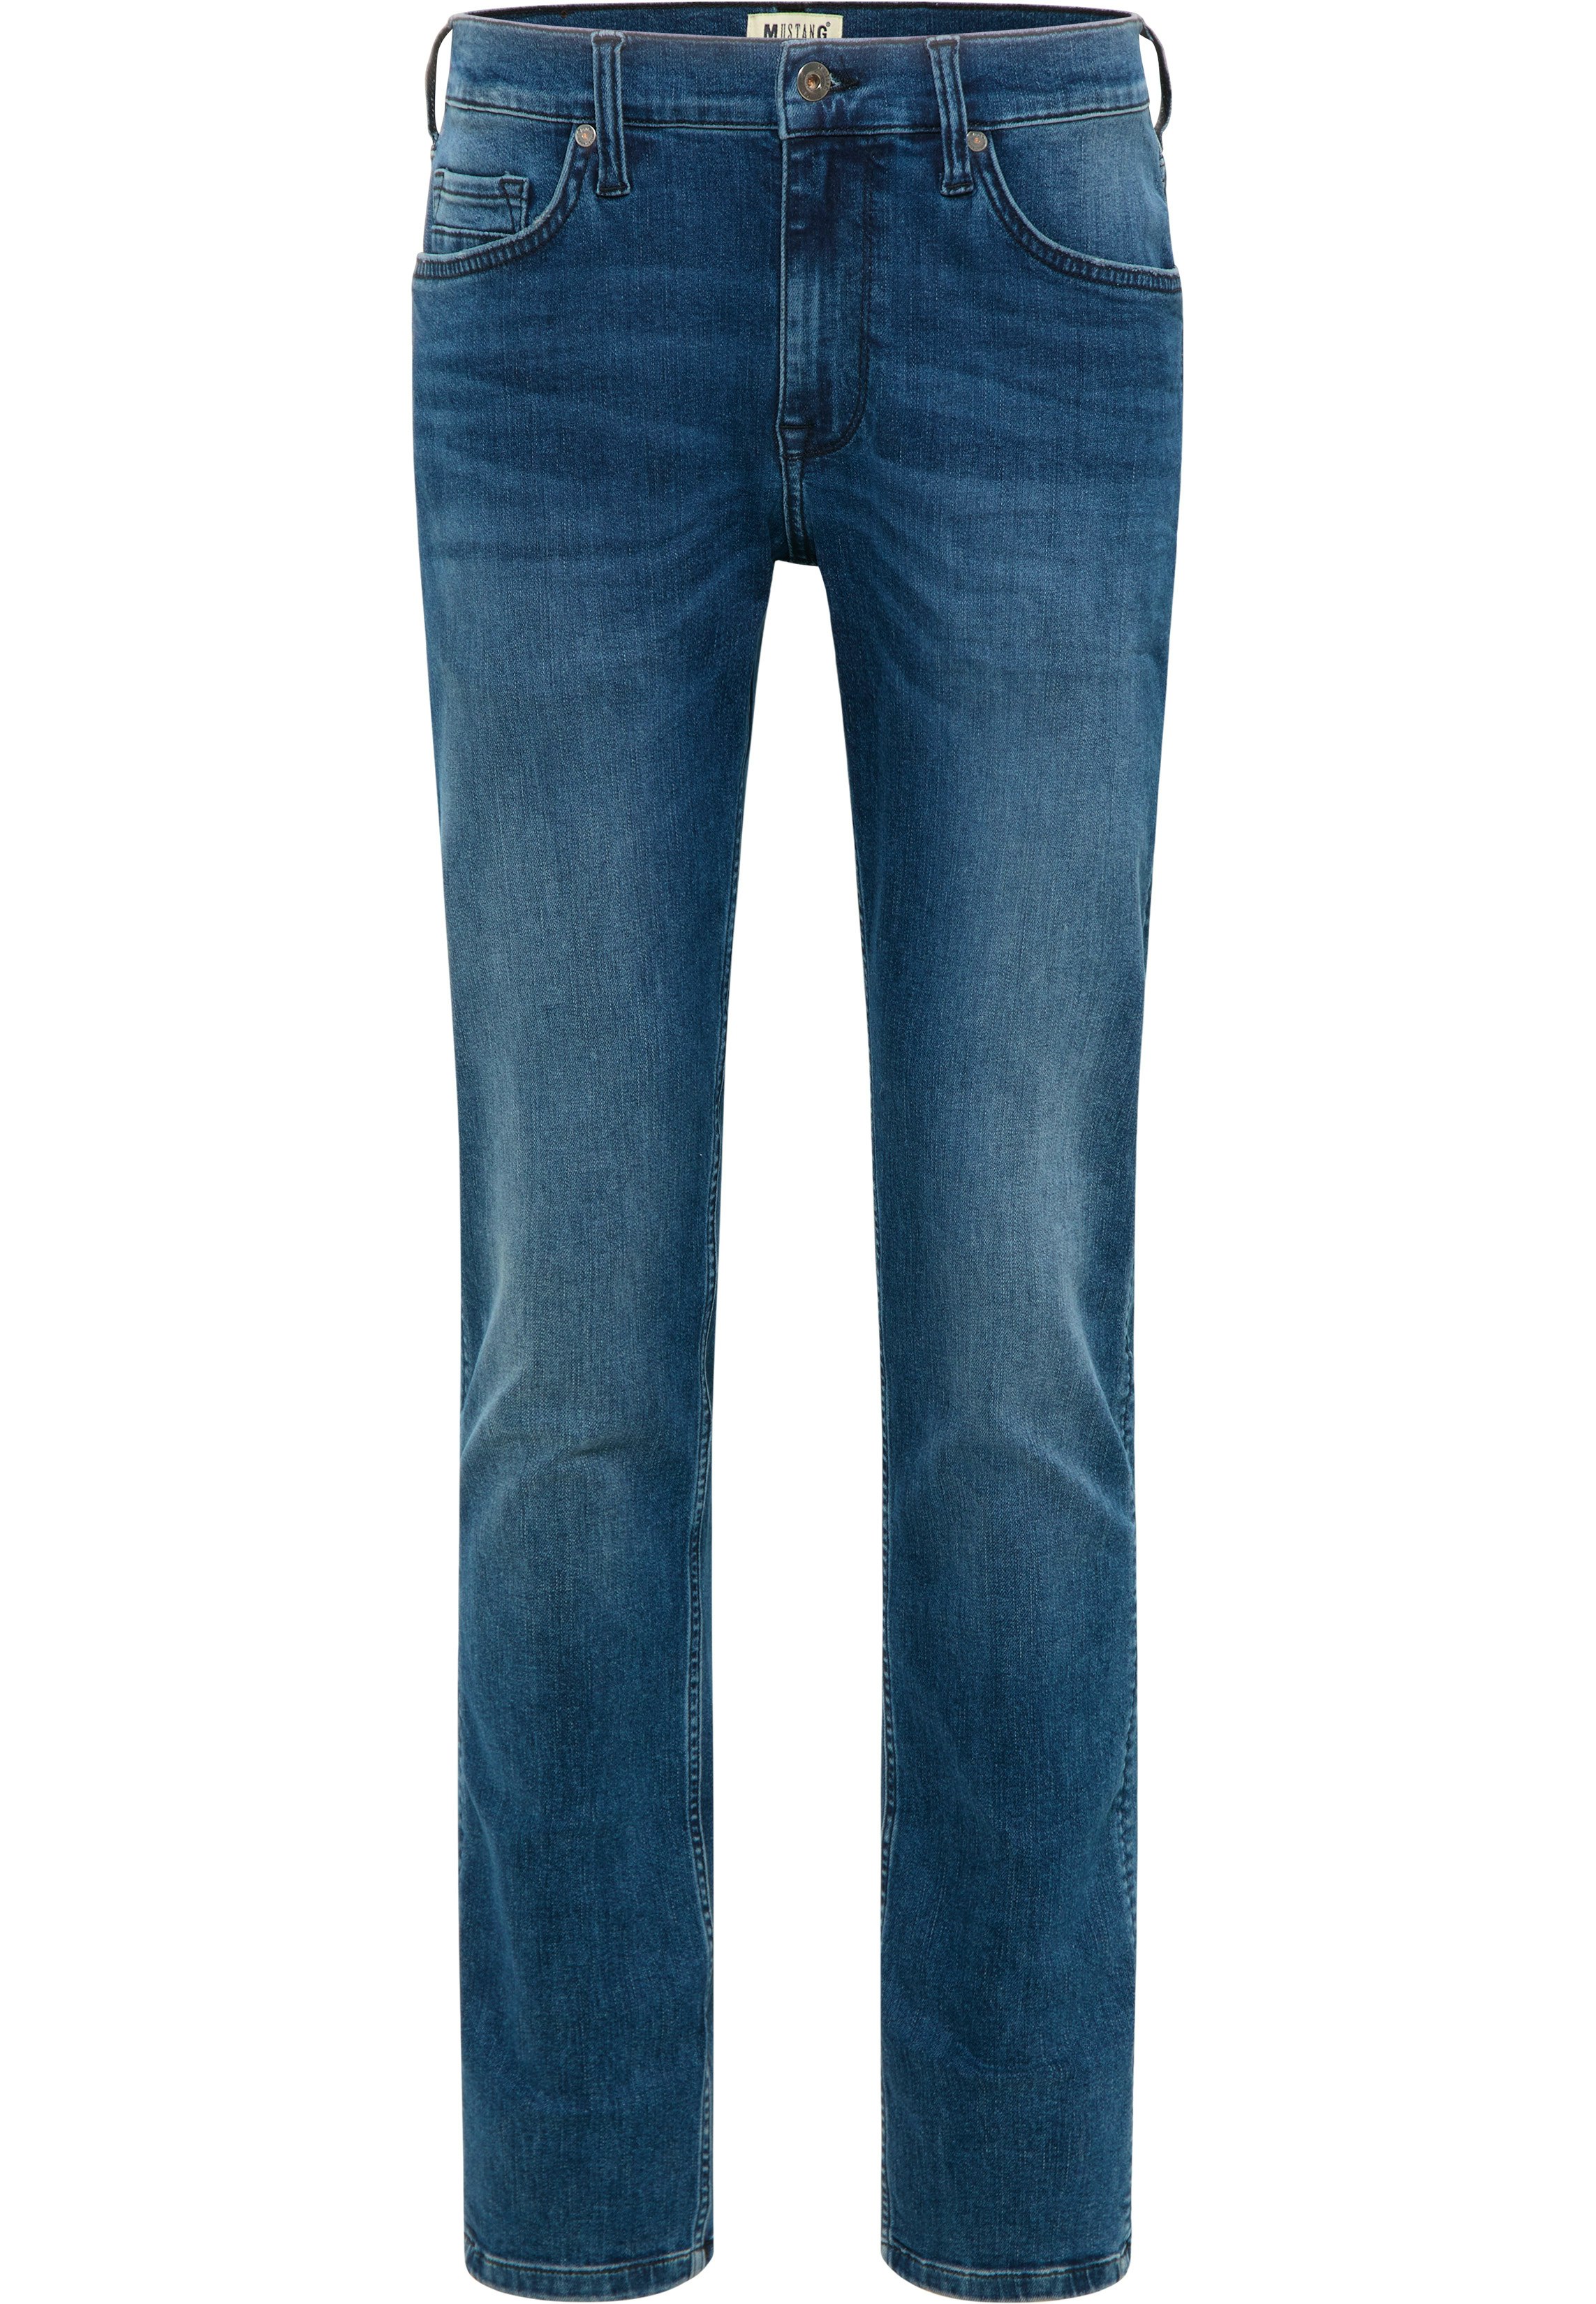 Worauf Sie als Käufer beim Kauf bei Herren jeans extra lang achten sollten